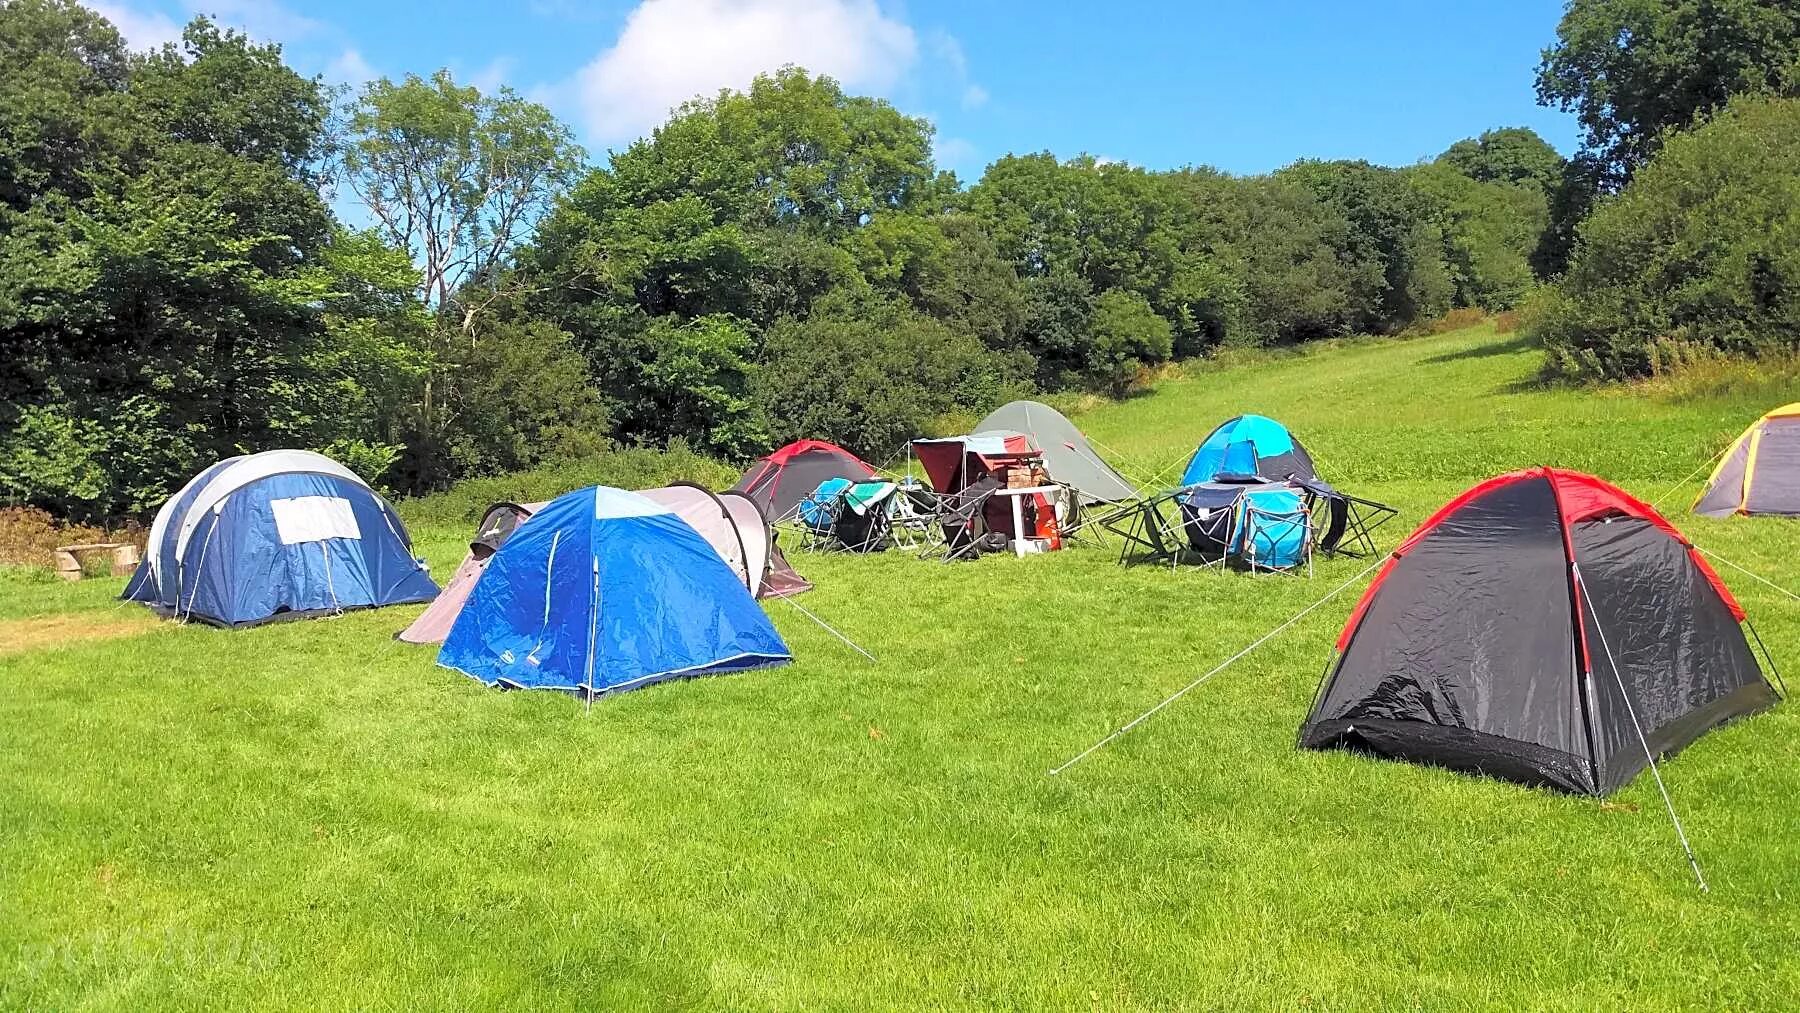 Camping php. "Camp.2050" кемпинг. Палатки для кемпинга. Палаточный лагерь. Обустройство палаточного лагеря.